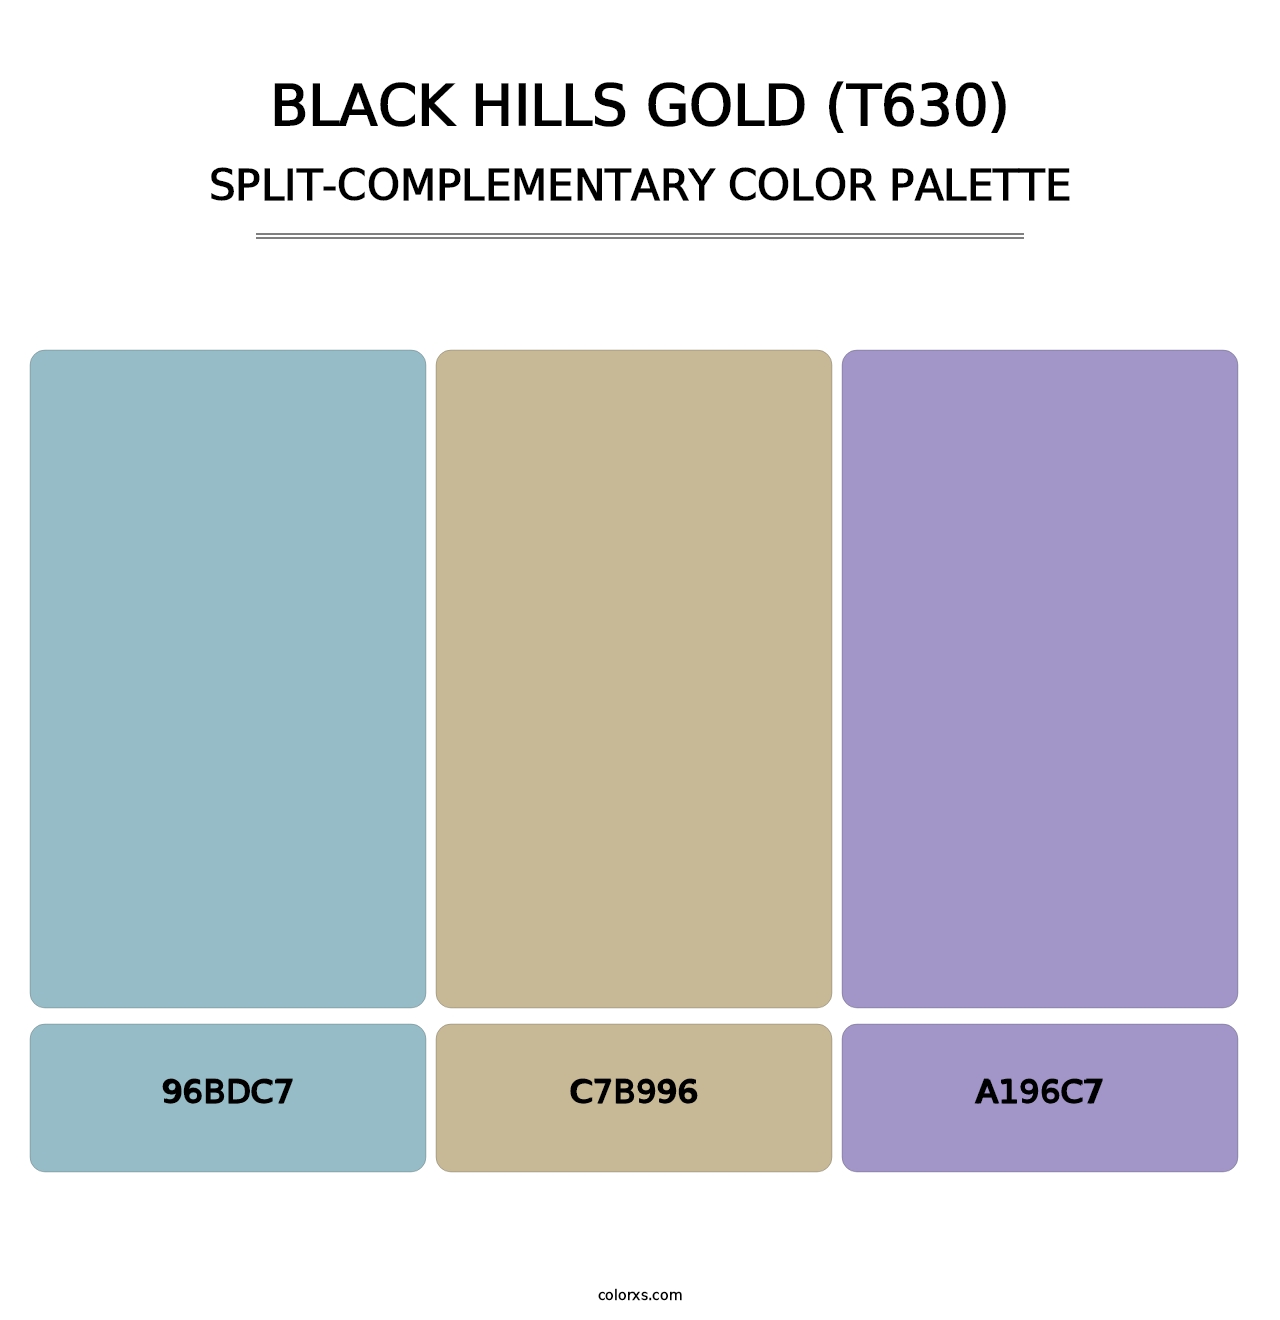 Black Hills Gold (T630) - Split-Complementary Color Palette